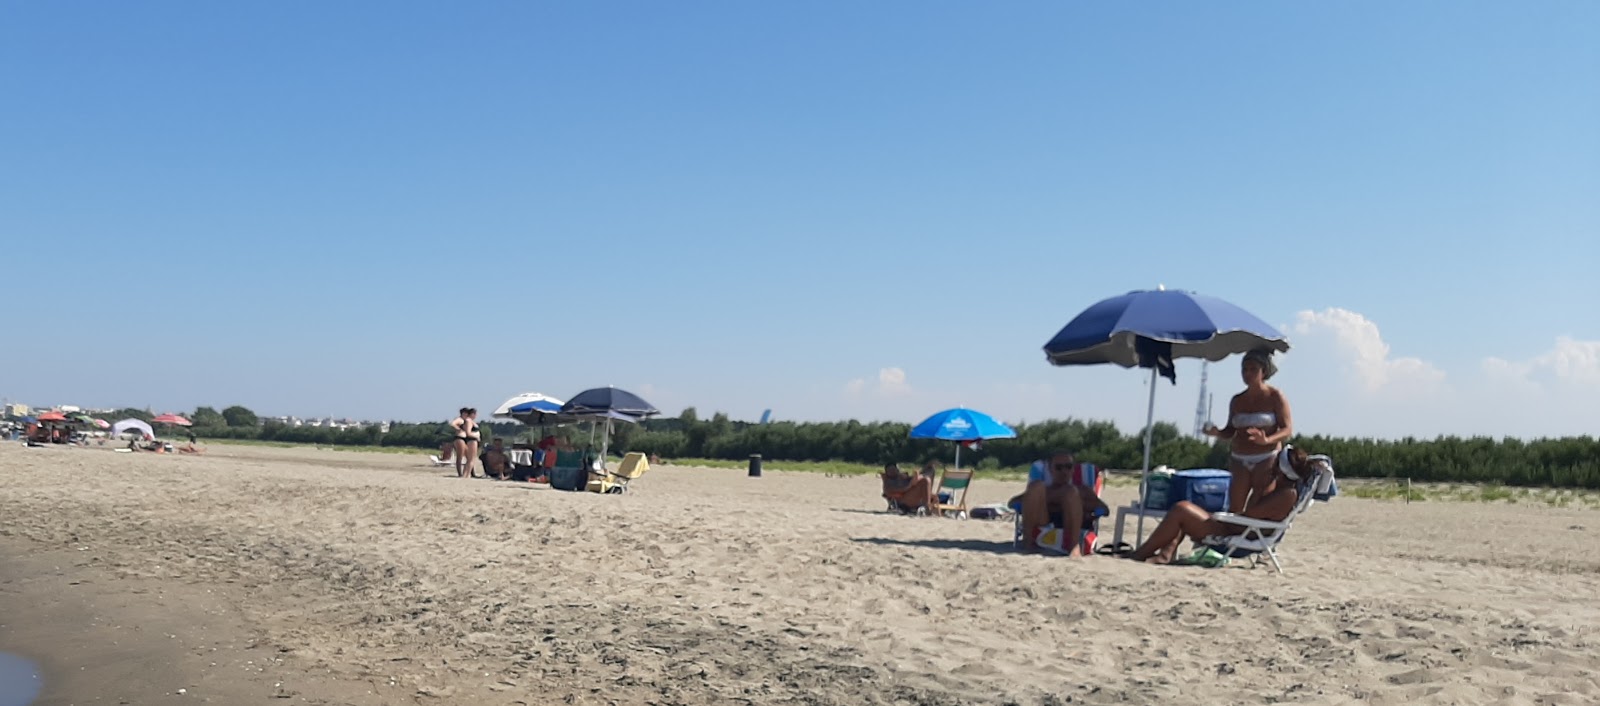 Foto de Spiaggia di Barletta con arena oscura superficie